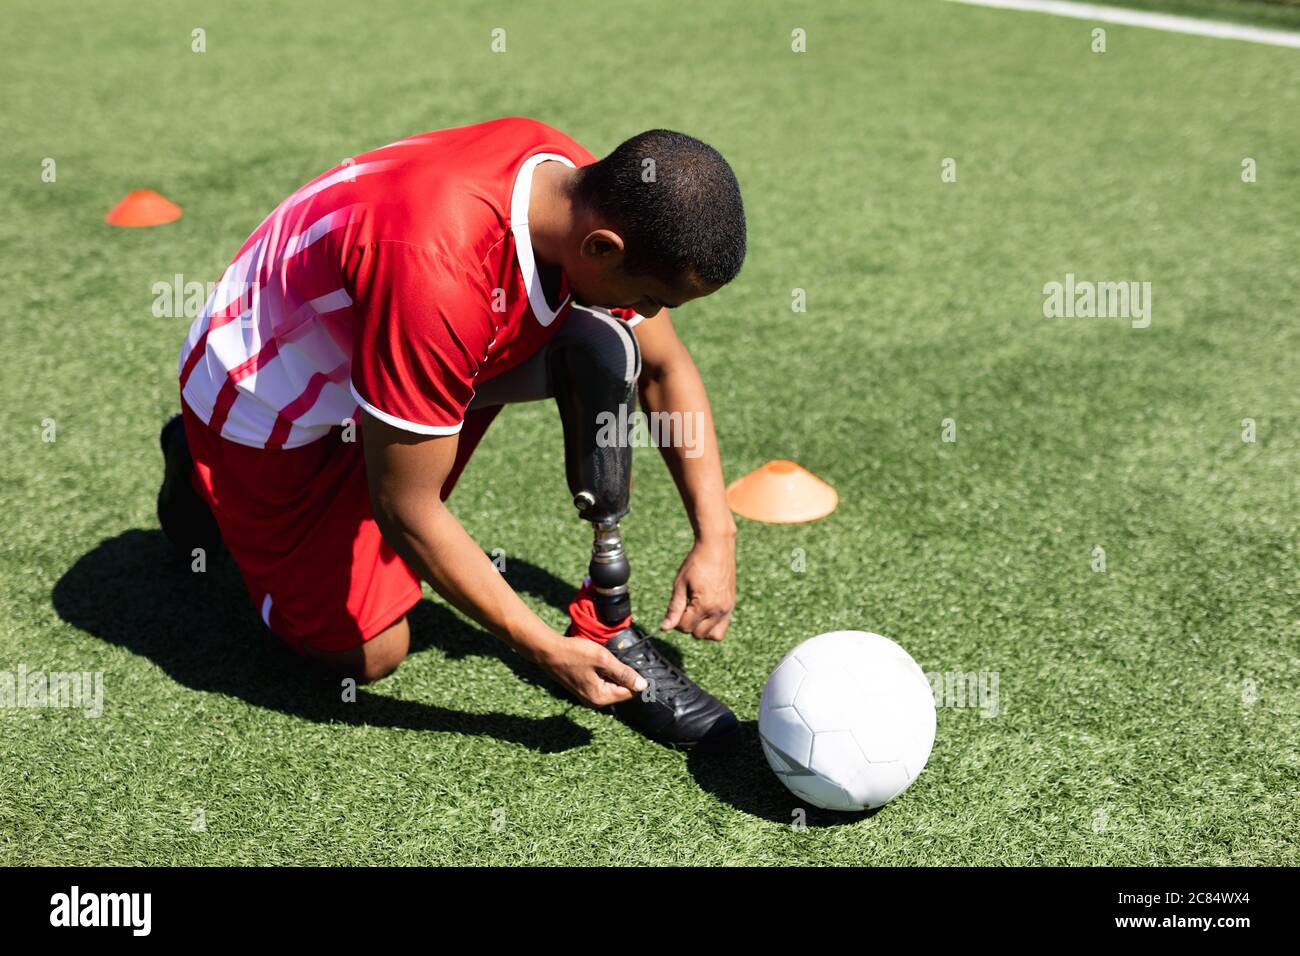 Joueur de football masculin de course mixte avec jambe prothétique portant un entraînement de bande d'équipe sur un terrain de sport au soleil, nouant le ballon de chaussures à côté de lui. Banque D'Images